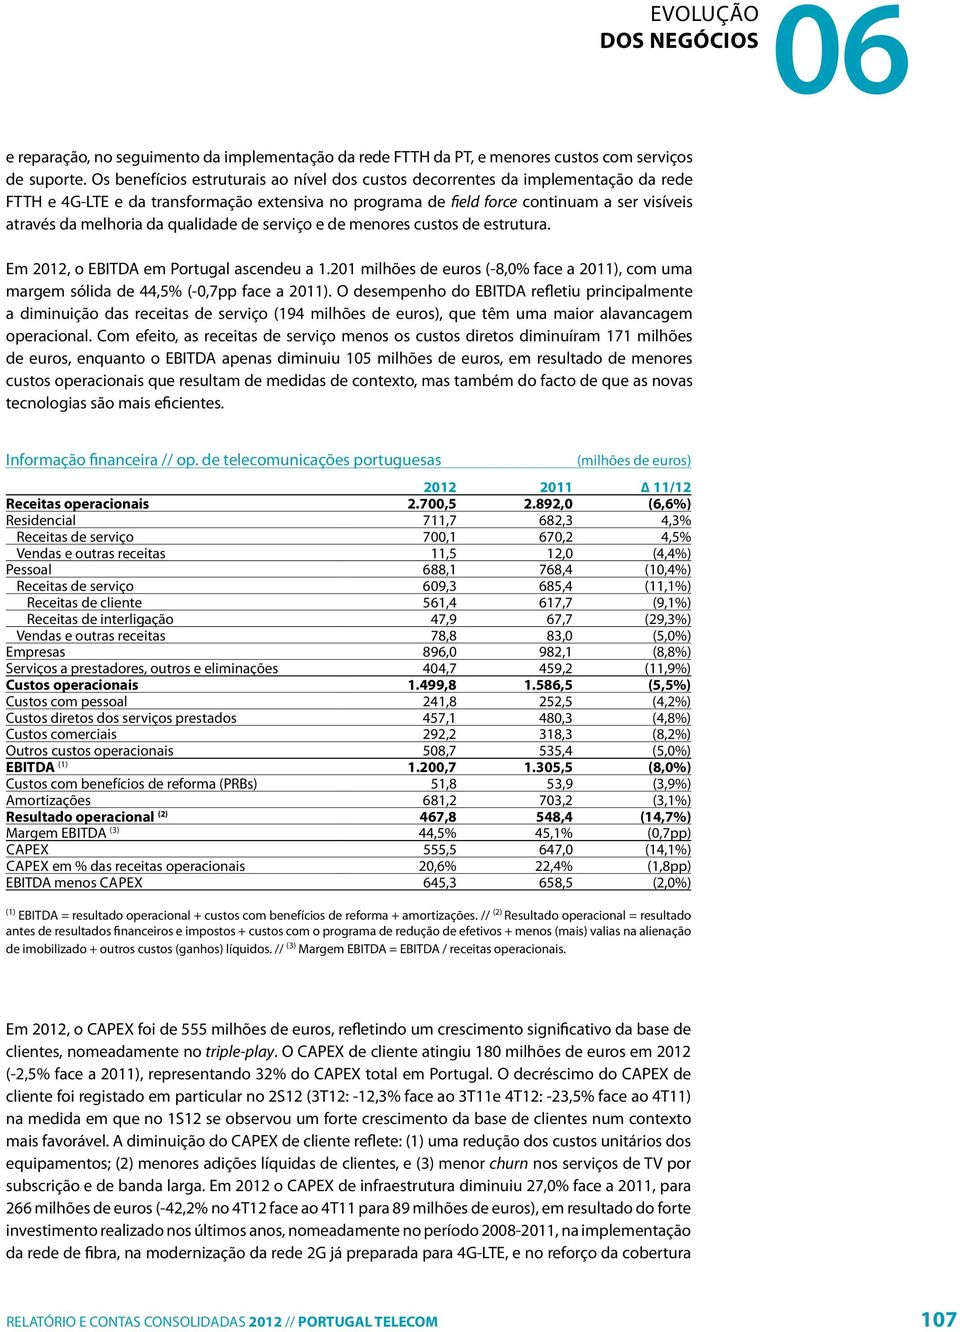 da qualidade de serviço e de menores custos de estrutura. Em 2012, o EBITDA em Portugal ascendeu a 1.201 milhões de euros (-8,0% face a 2011), com uma margem sólida de 44,5% (-0,7pp face a 2011).